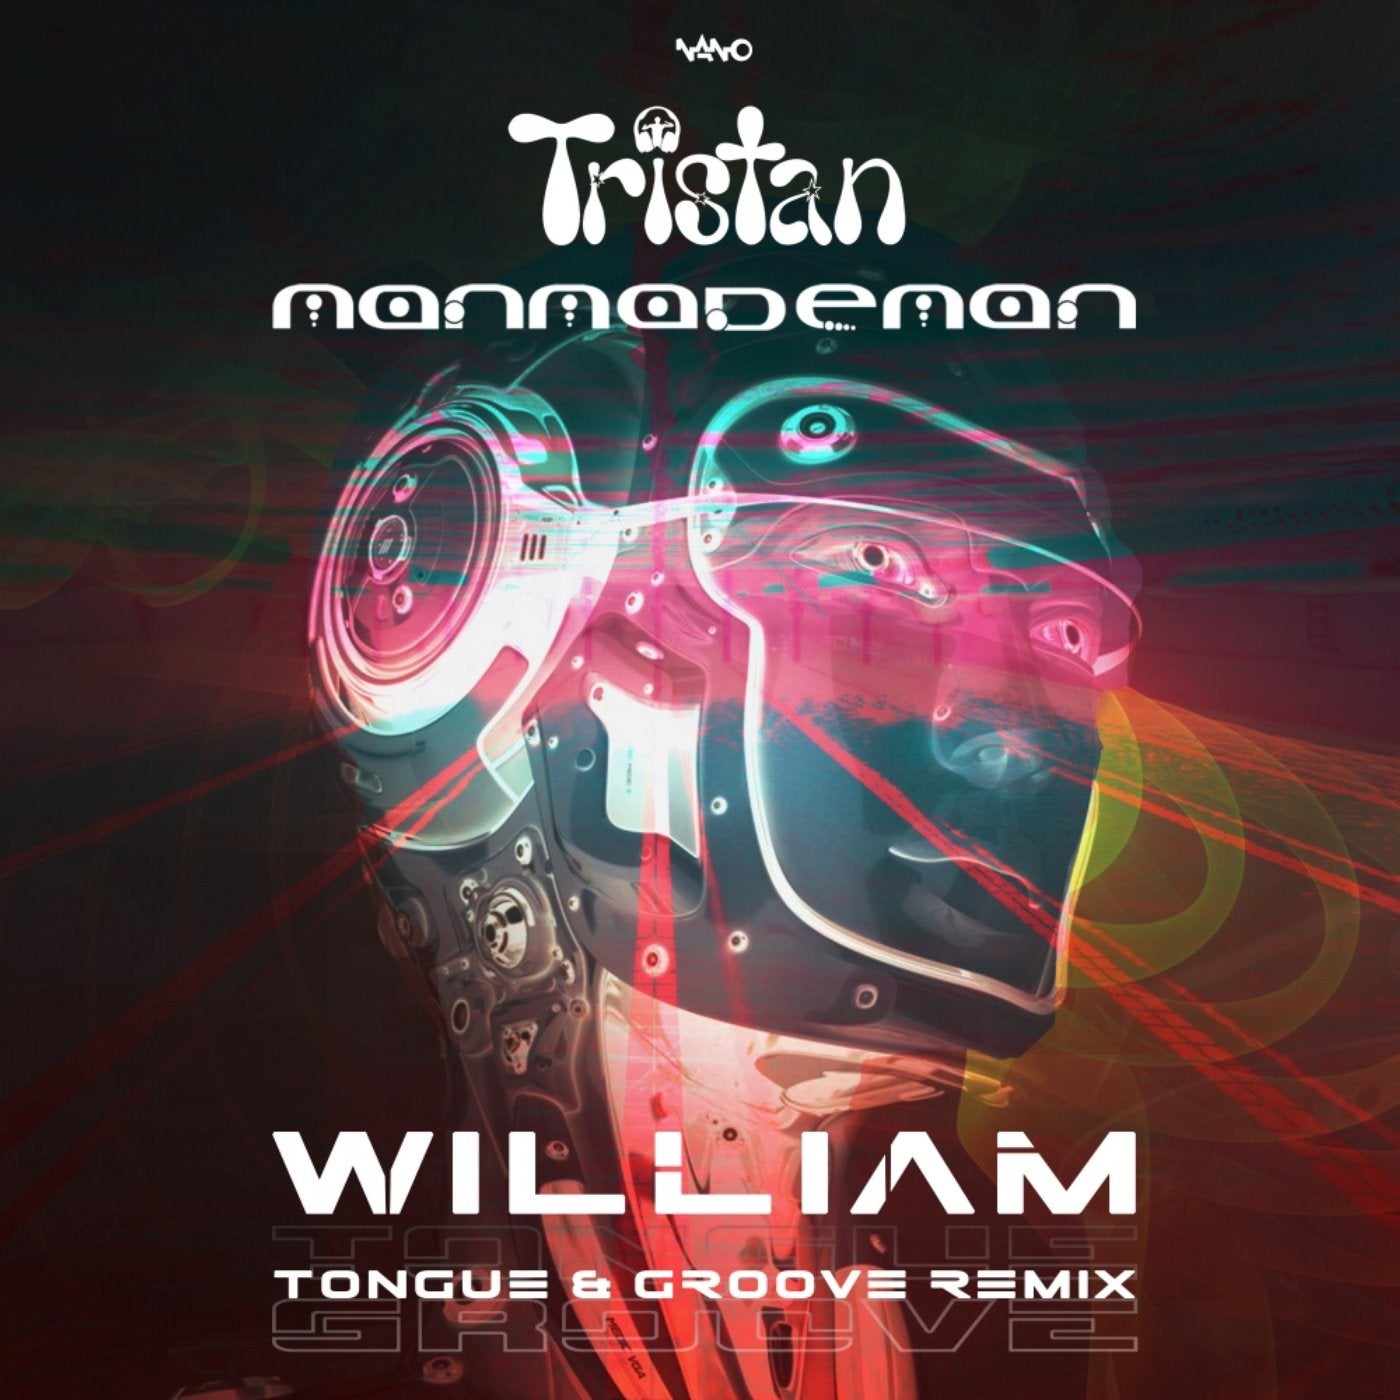 William (Tongue & Groove Remix)